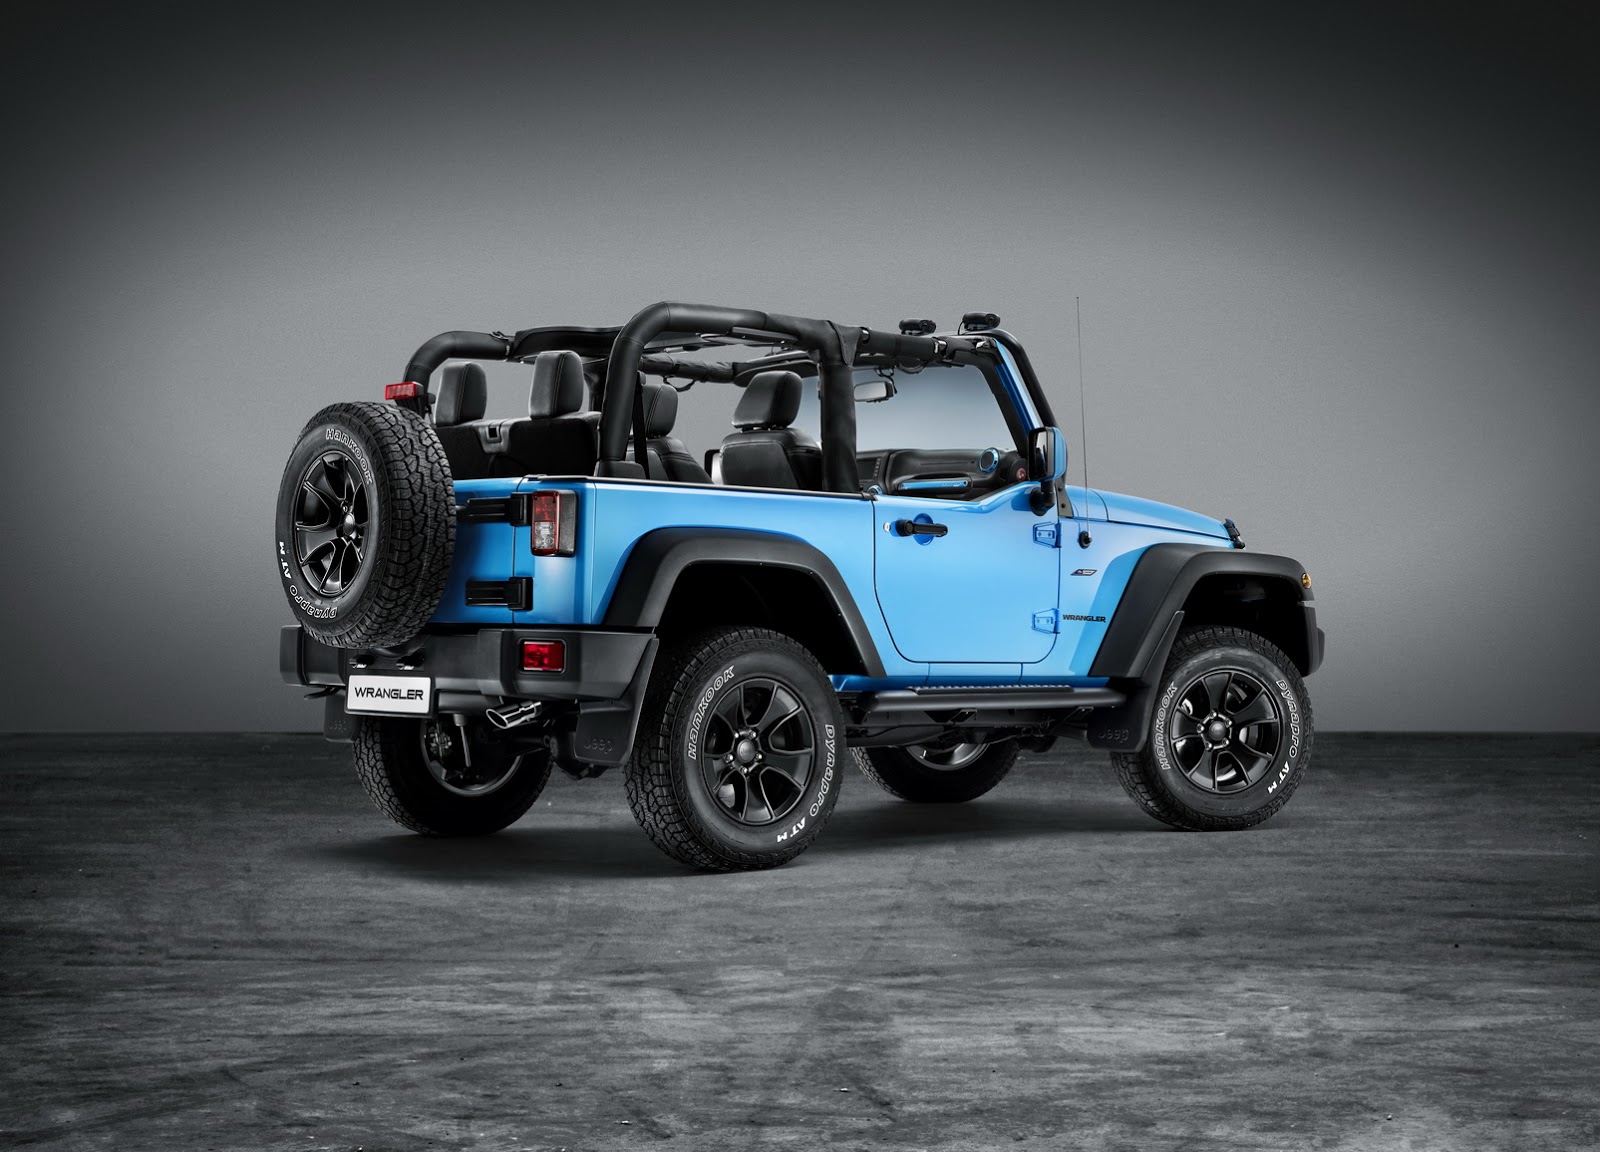 Chiếc xe Jeep màu xanh dương xuất hiện tại triển lãm Geneva có gì lạ?